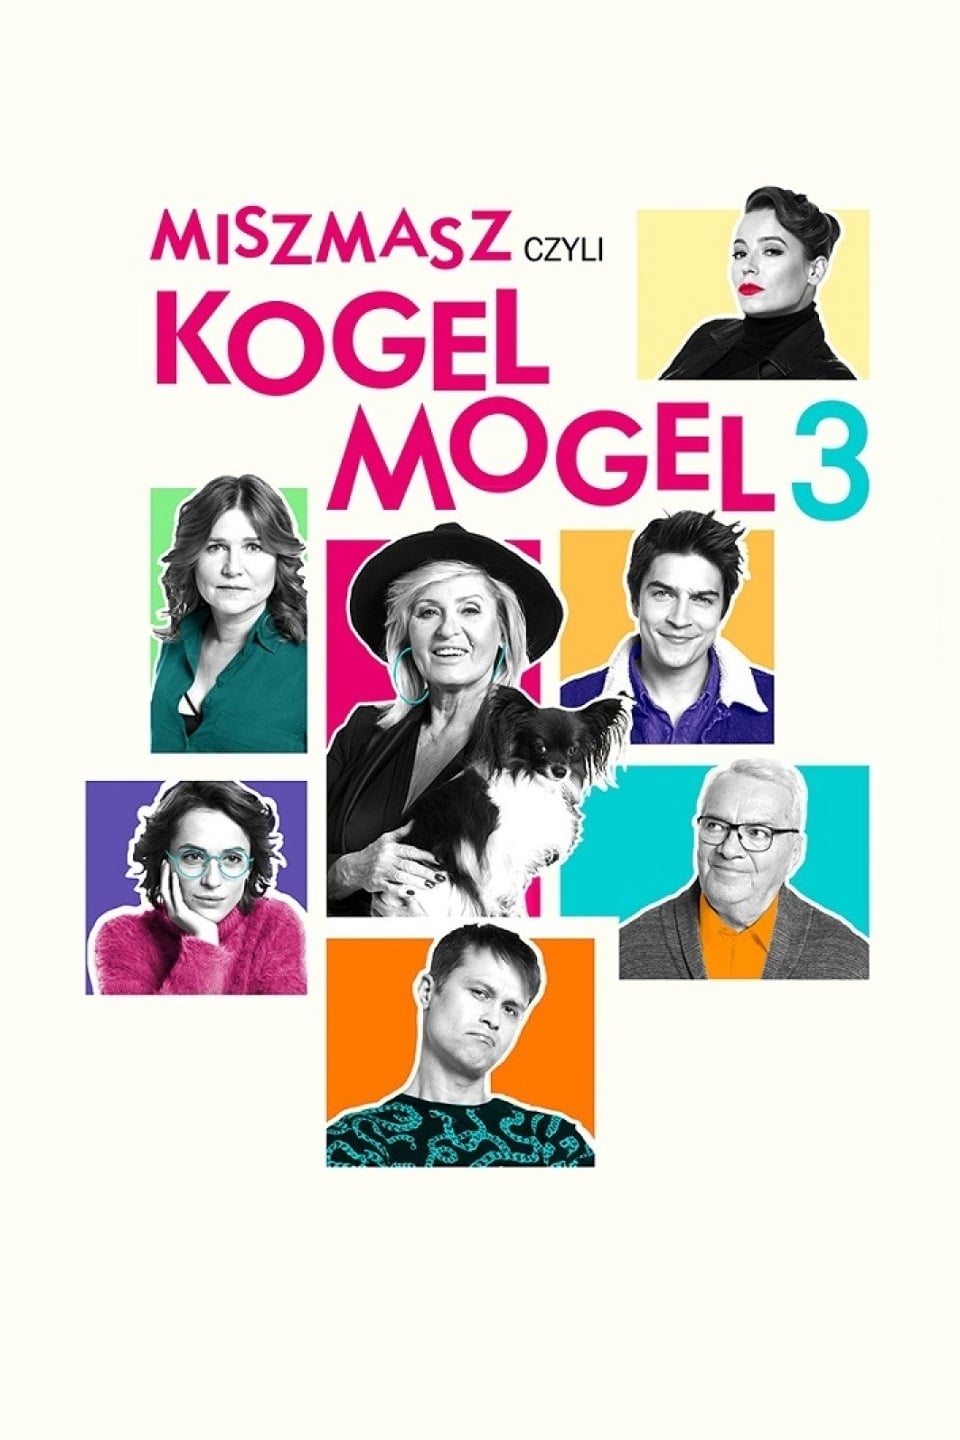 Miszmasz czyli Kogel Mogel 3 (2019)